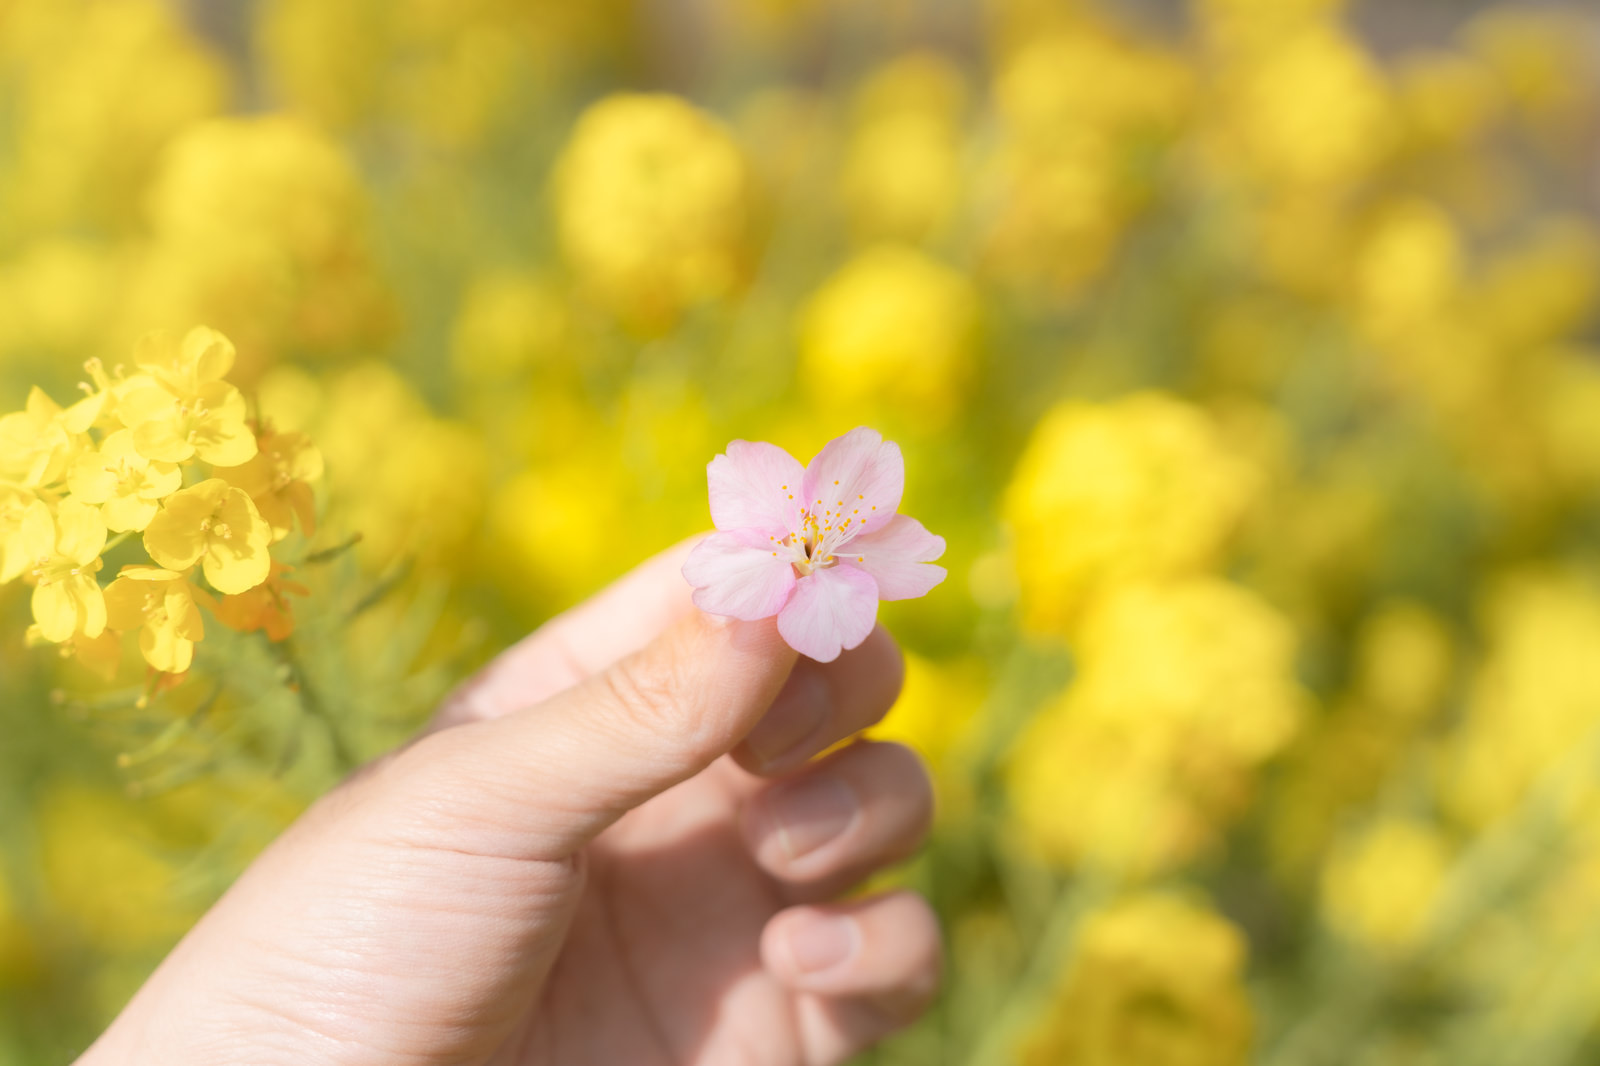 「摘まみ上げた桜の花と菜の花畑 | フリー素材のぱくたそ」の写真